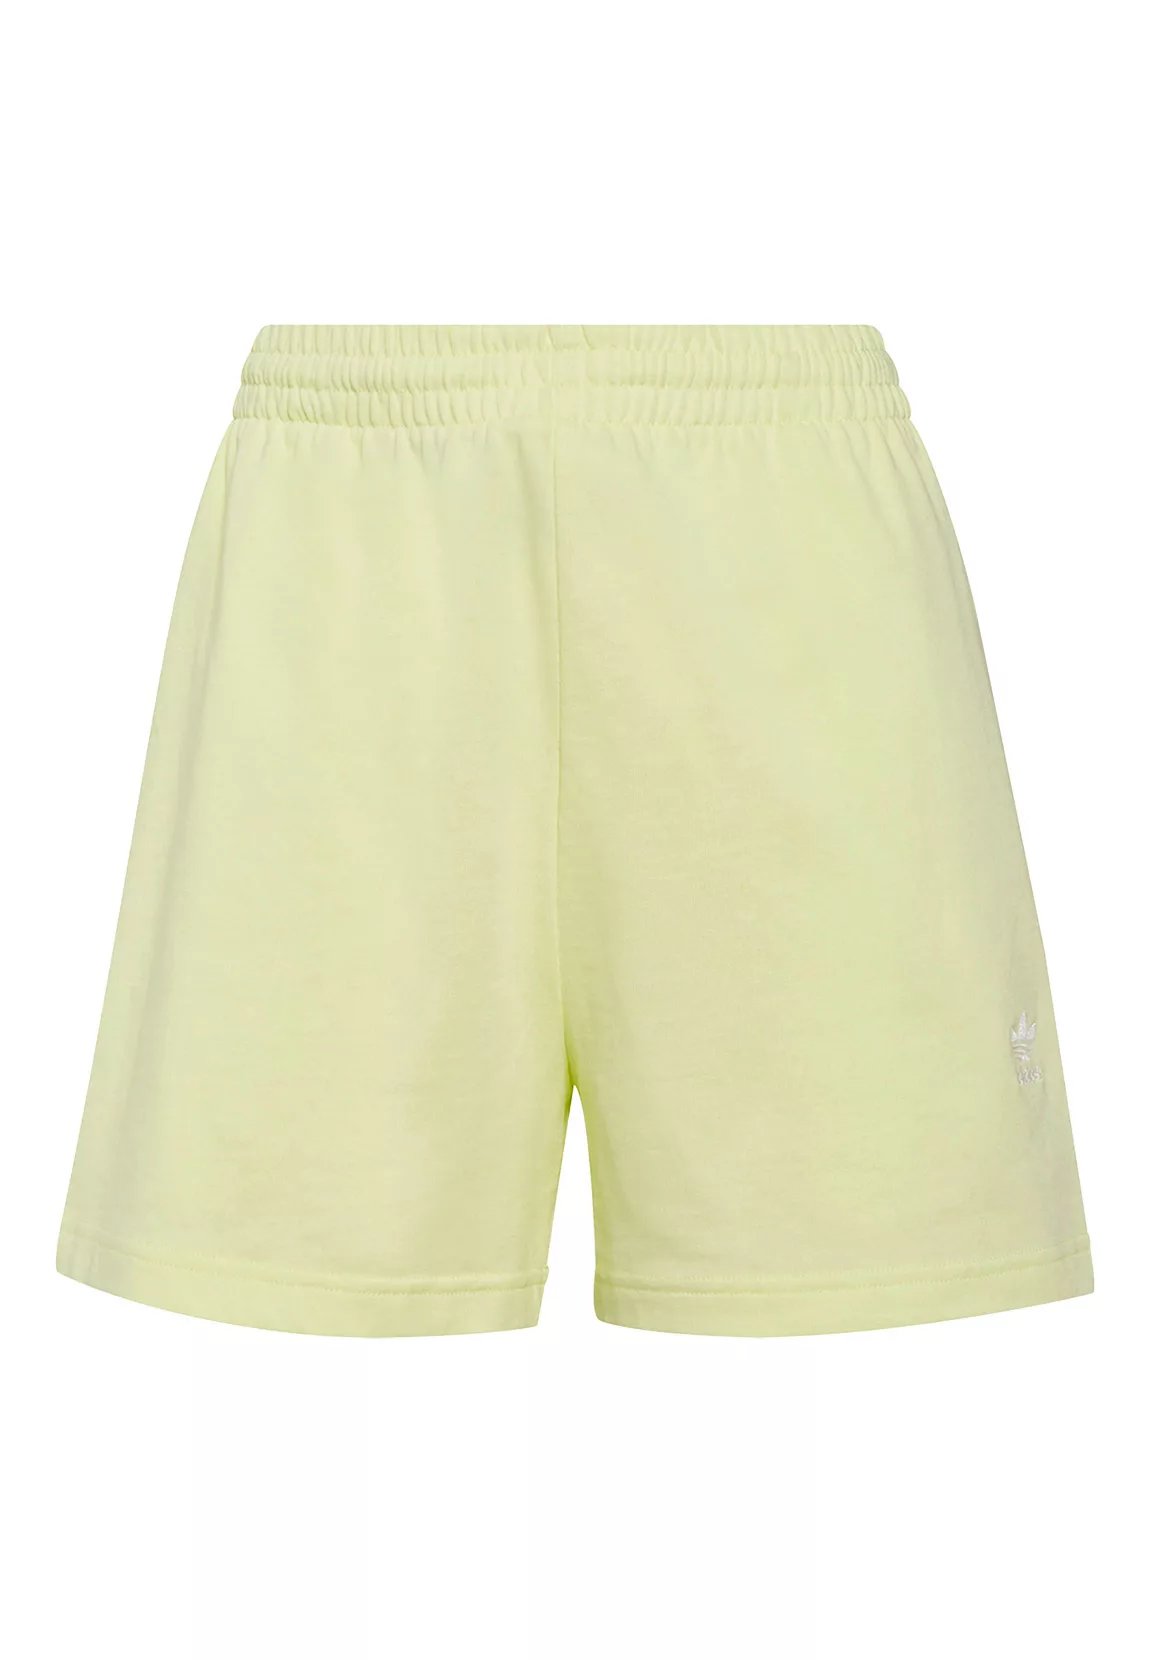 Adidas Originals Shorts Hosen 38 Pulse Yellow günstig online kaufen